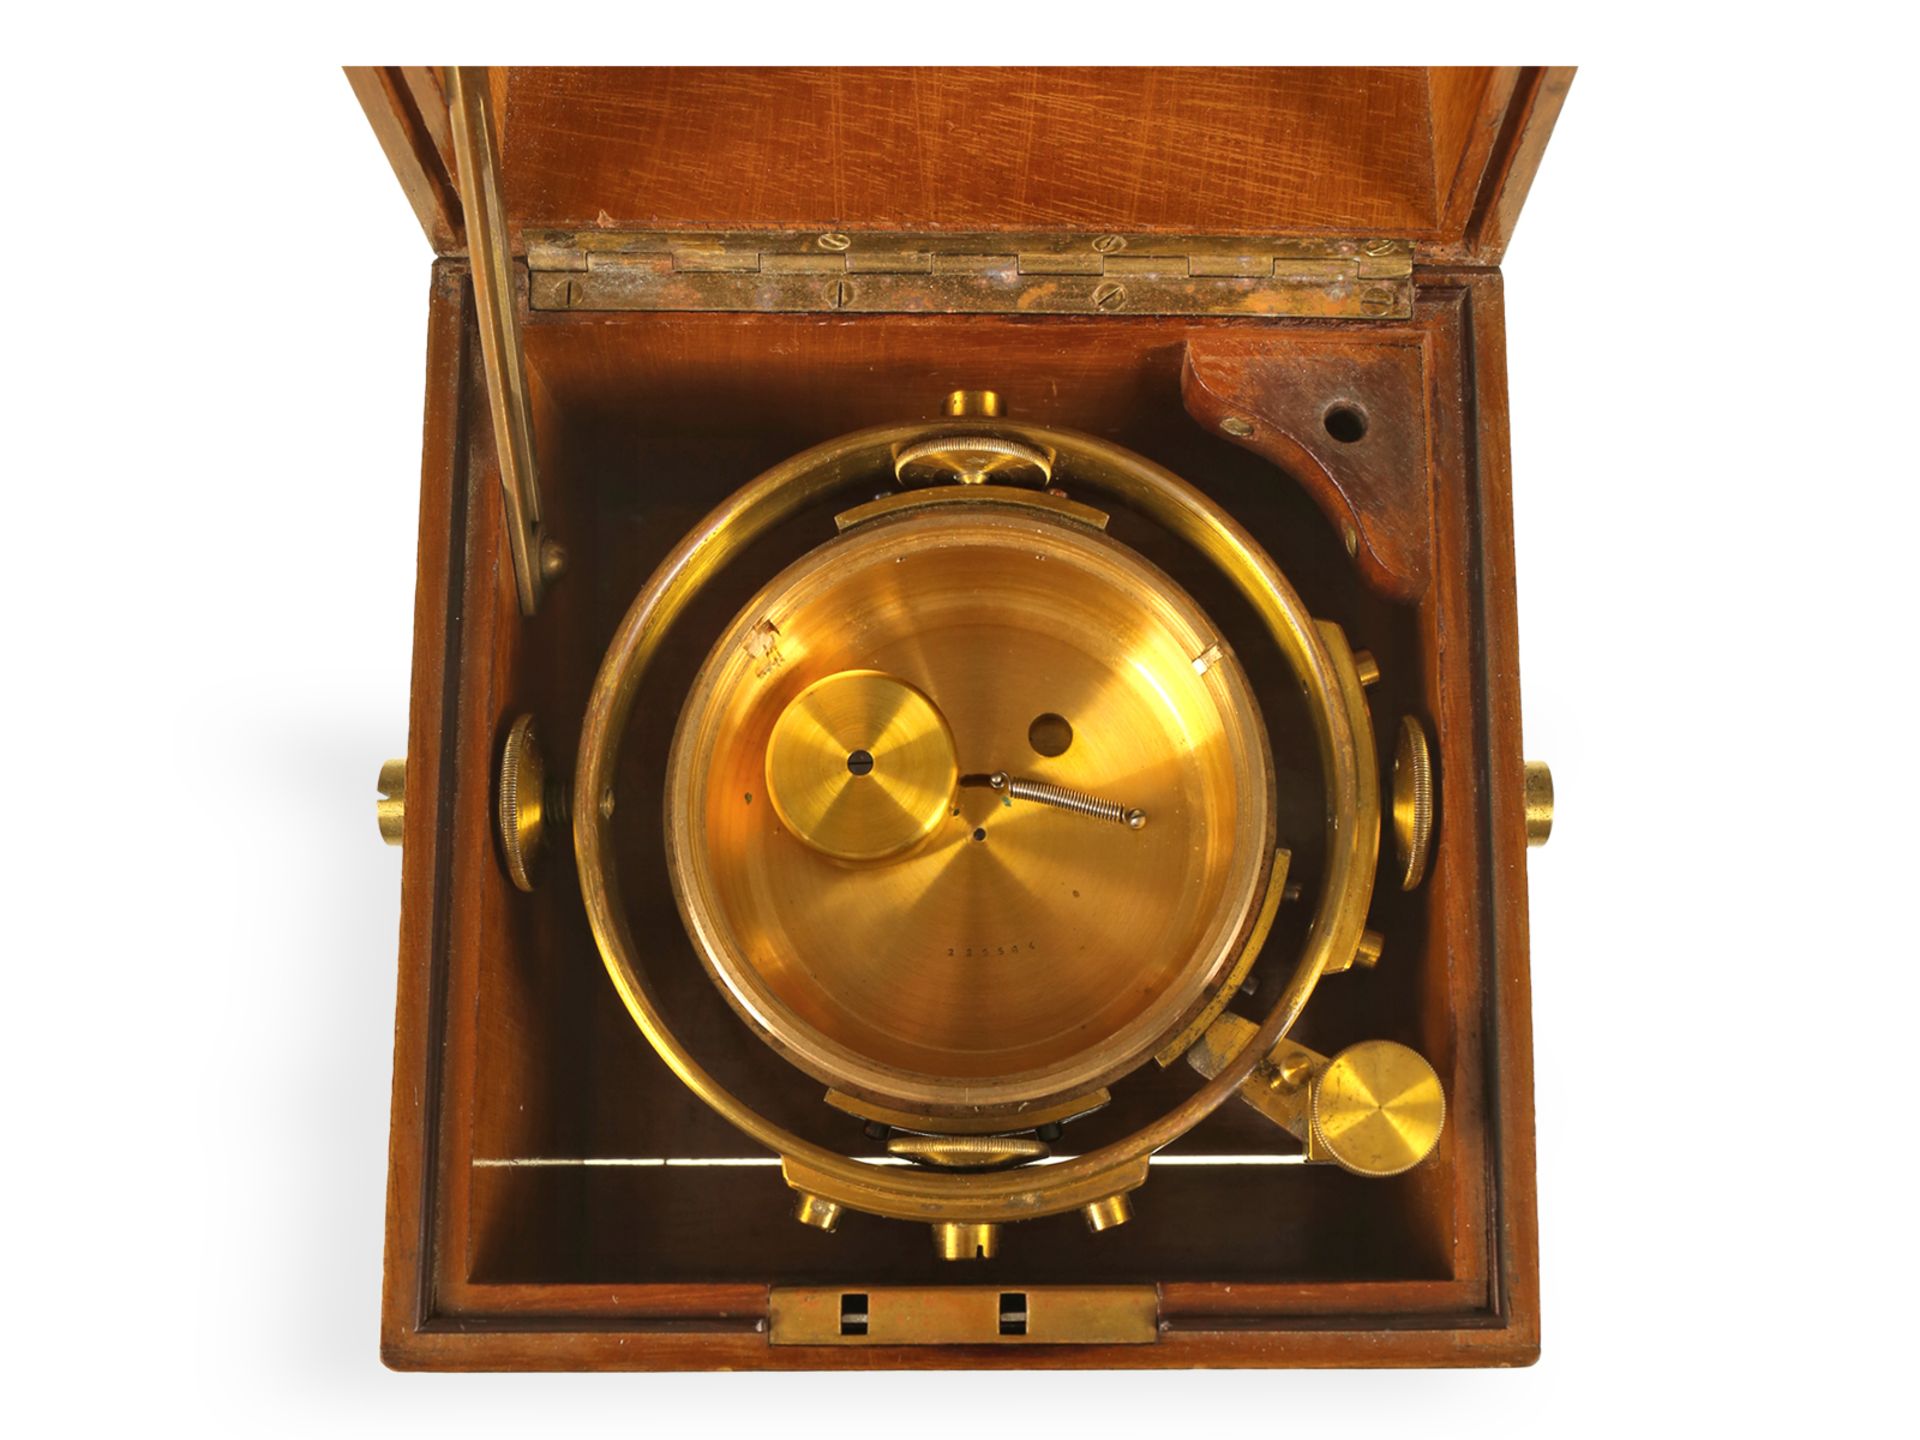 Hervorragend erhaltenes Zenith Marinechronometer, 30er Jahre - Bild 3 aus 7